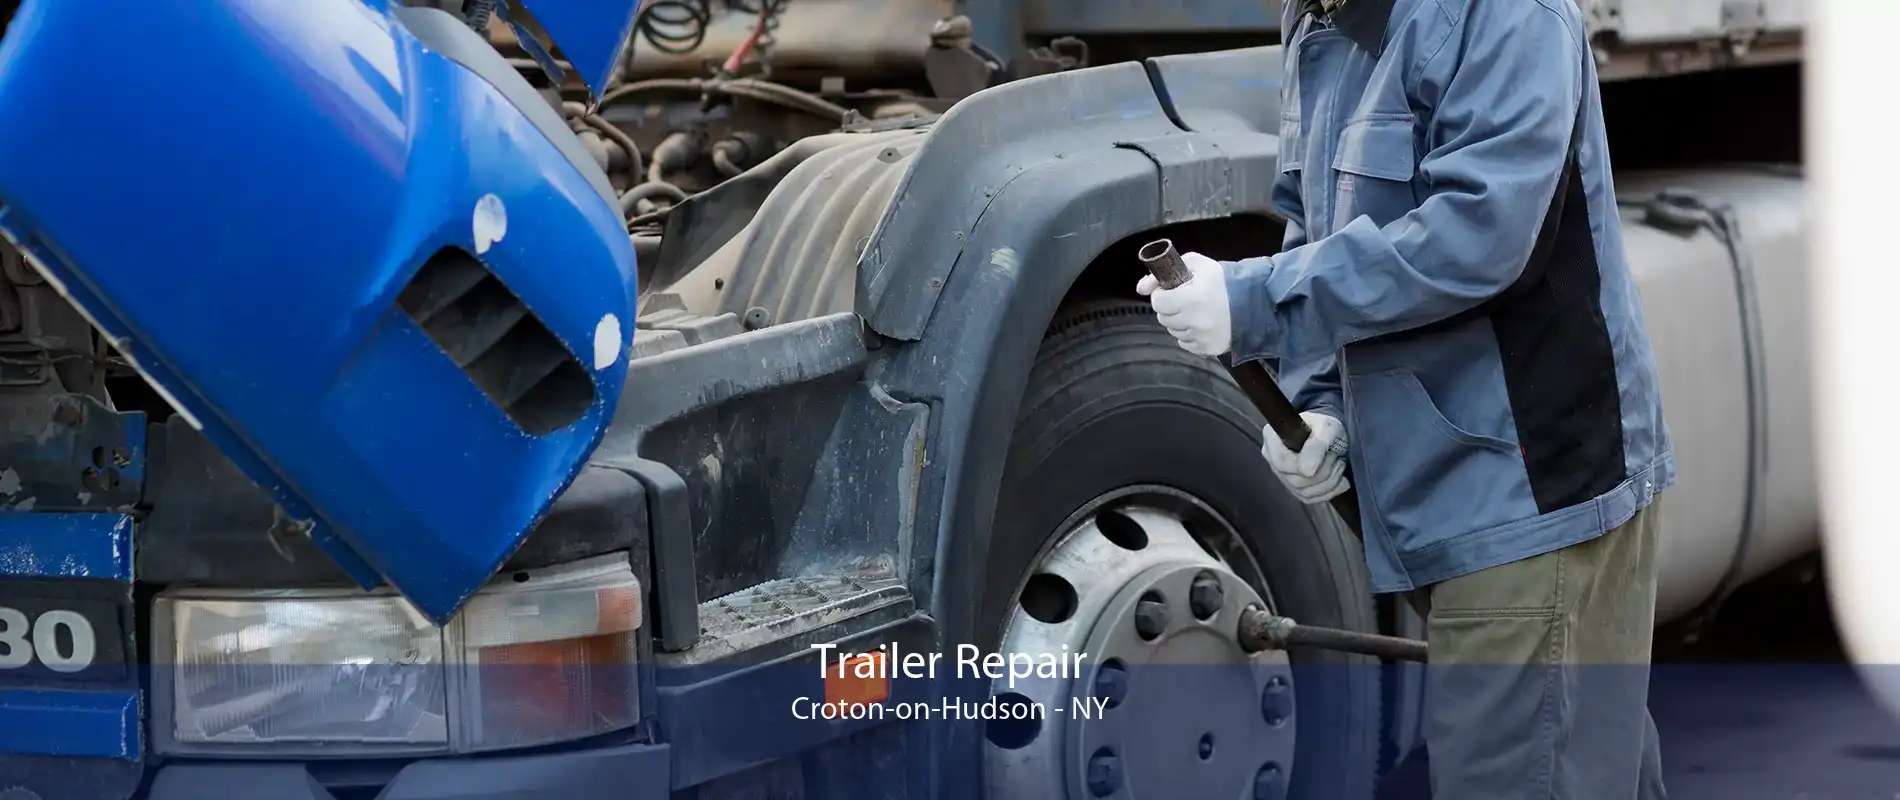 Trailer Repair Croton-on-Hudson - NY